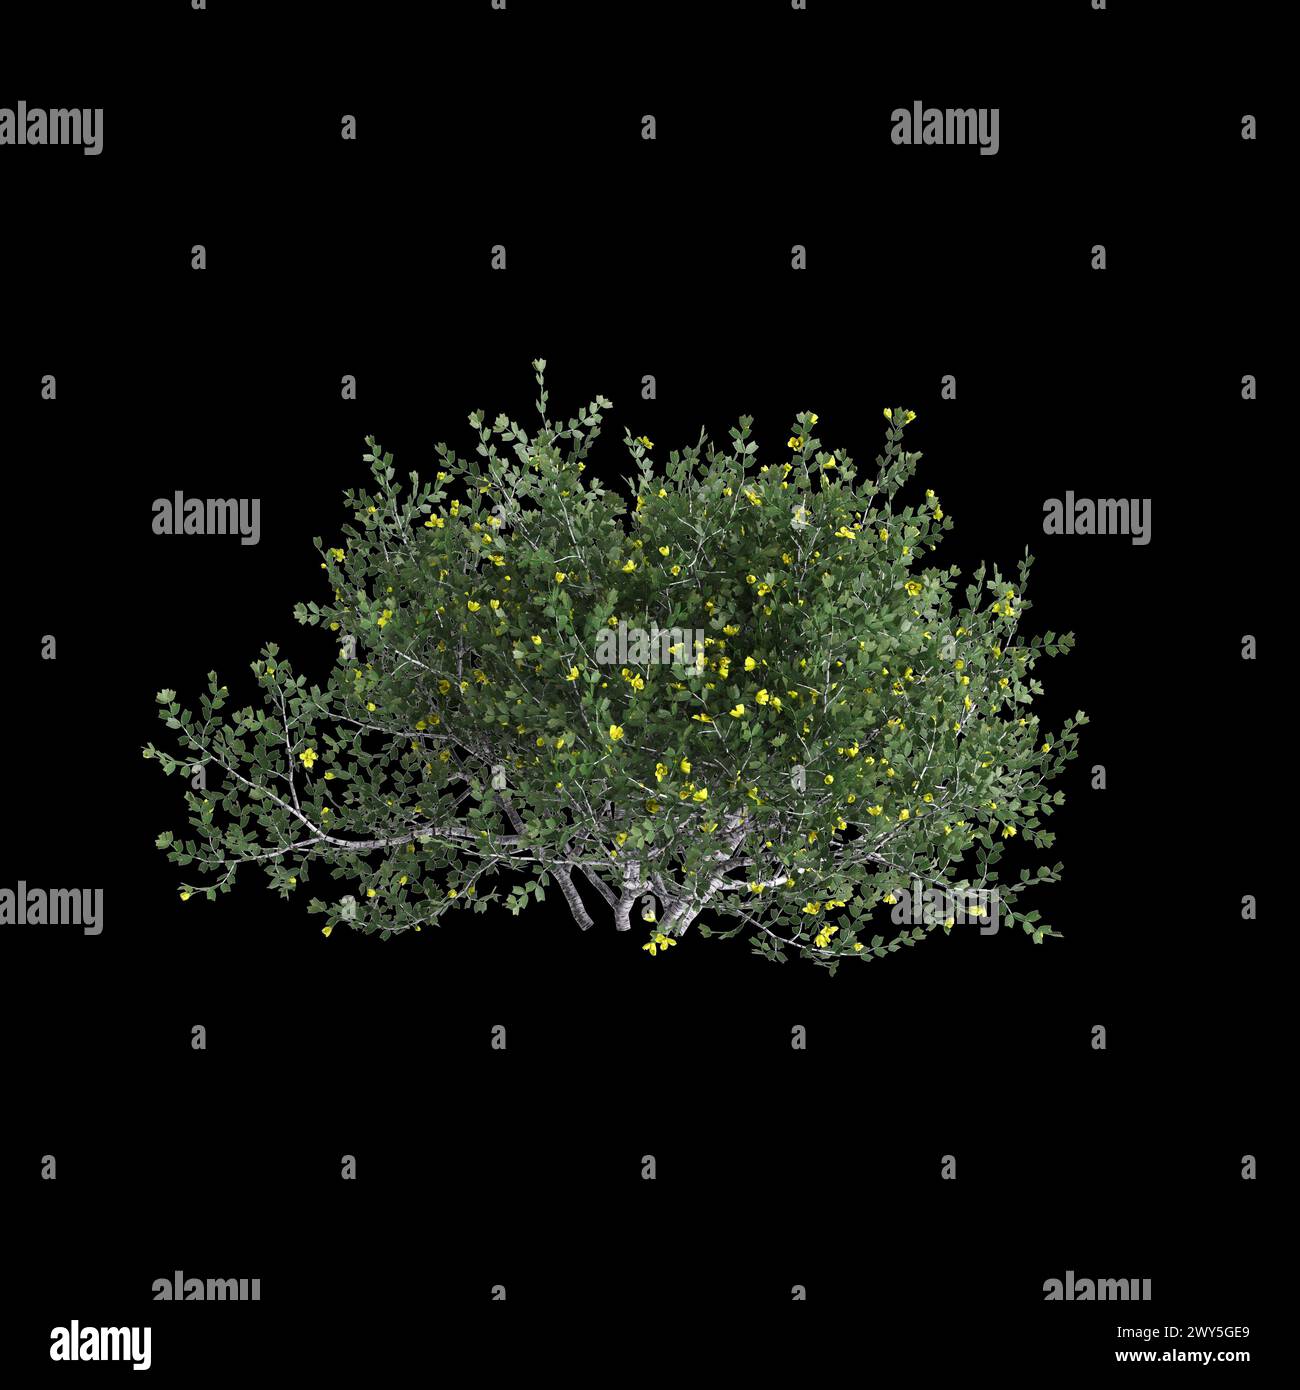 3d illustration of Larrea cuneifolia tree isolated on black background Stock Photo